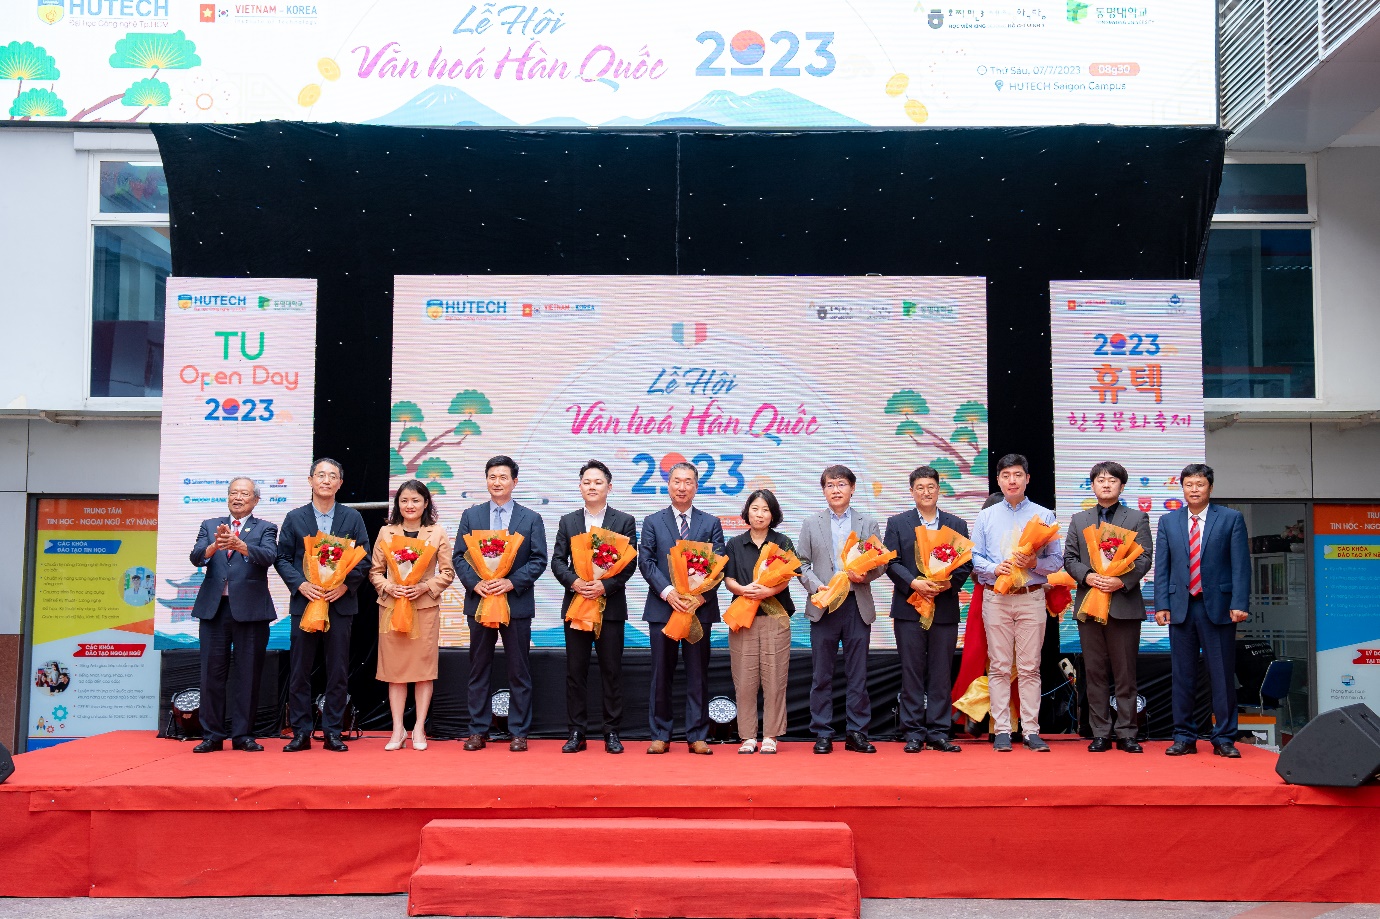 Giới trẻ thành phố rủ nhau “phá đảo” xứ sở kim chi trong Lễ hội Văn hóa Hàn Quốc 2023 tại HUTECH - Ảnh 1.